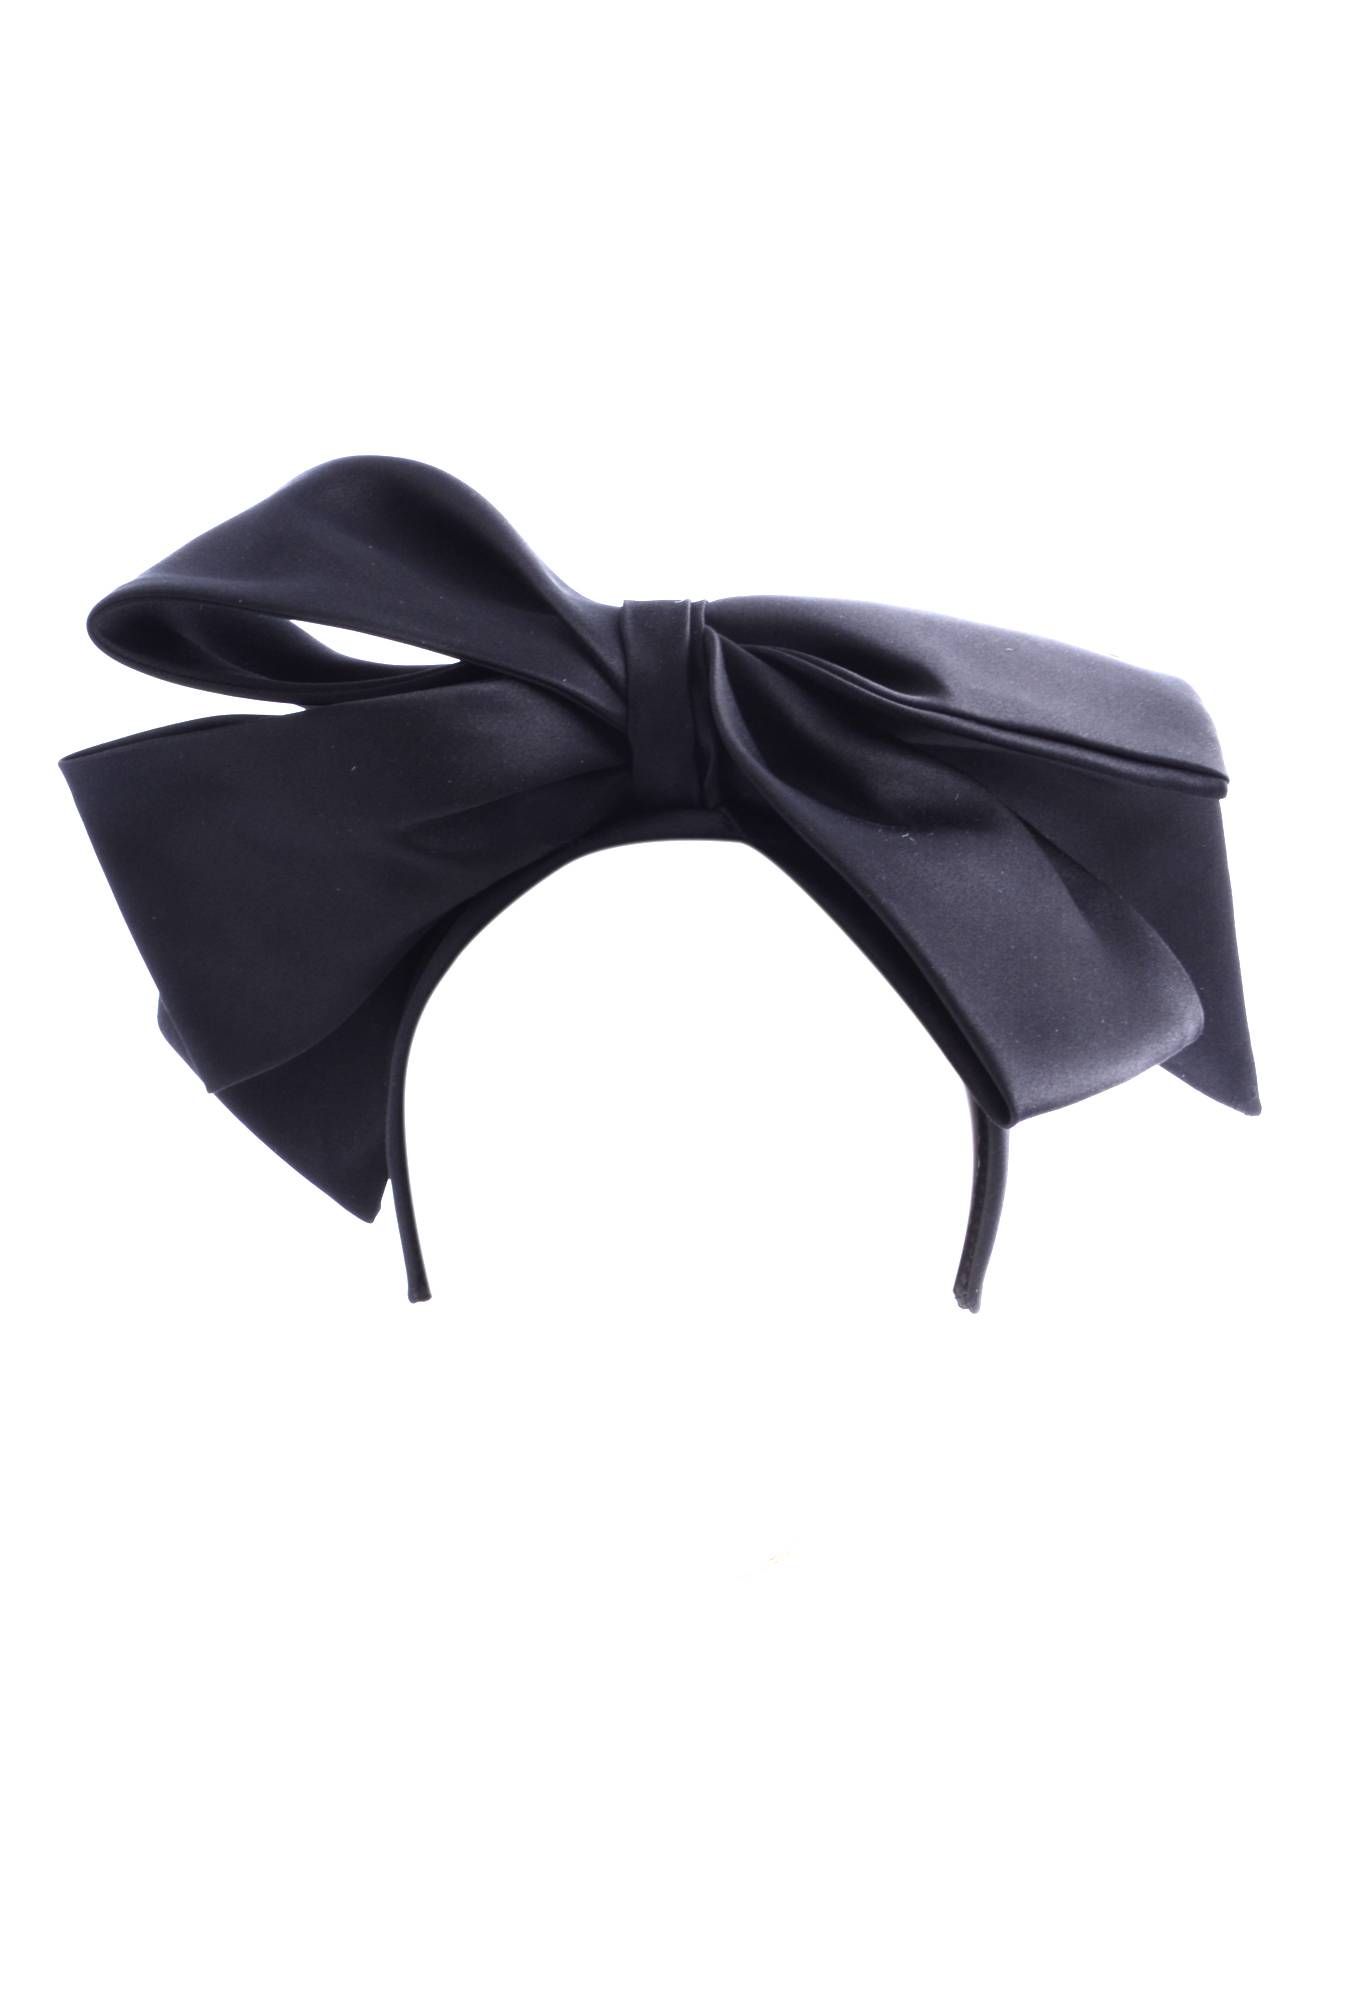 Dolce & Gabbana Women Bow Headband
IY119A FU1CK
90% Silk, 10% Acetate